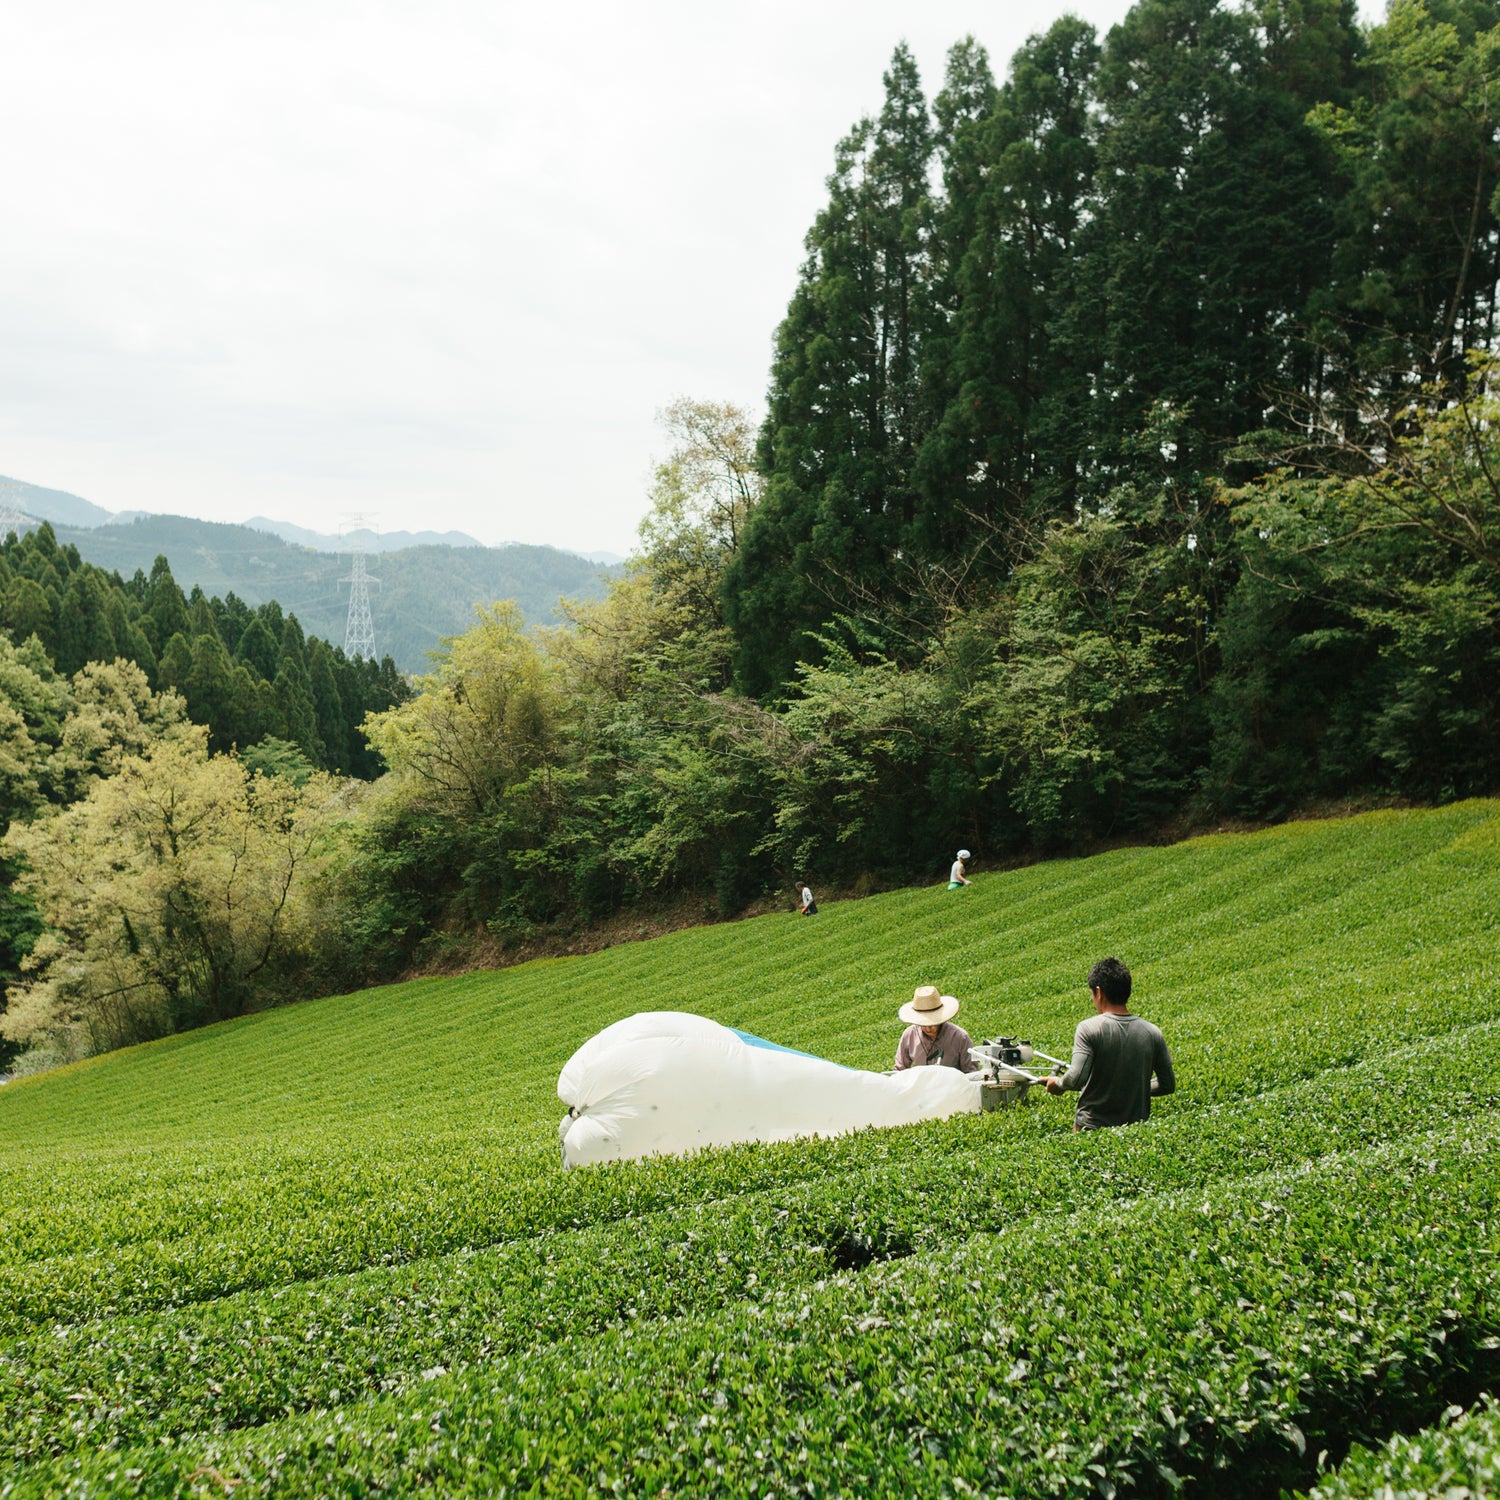 BROO - Craft Tea from Japan. Single-origin, small-batch, pesticide-free